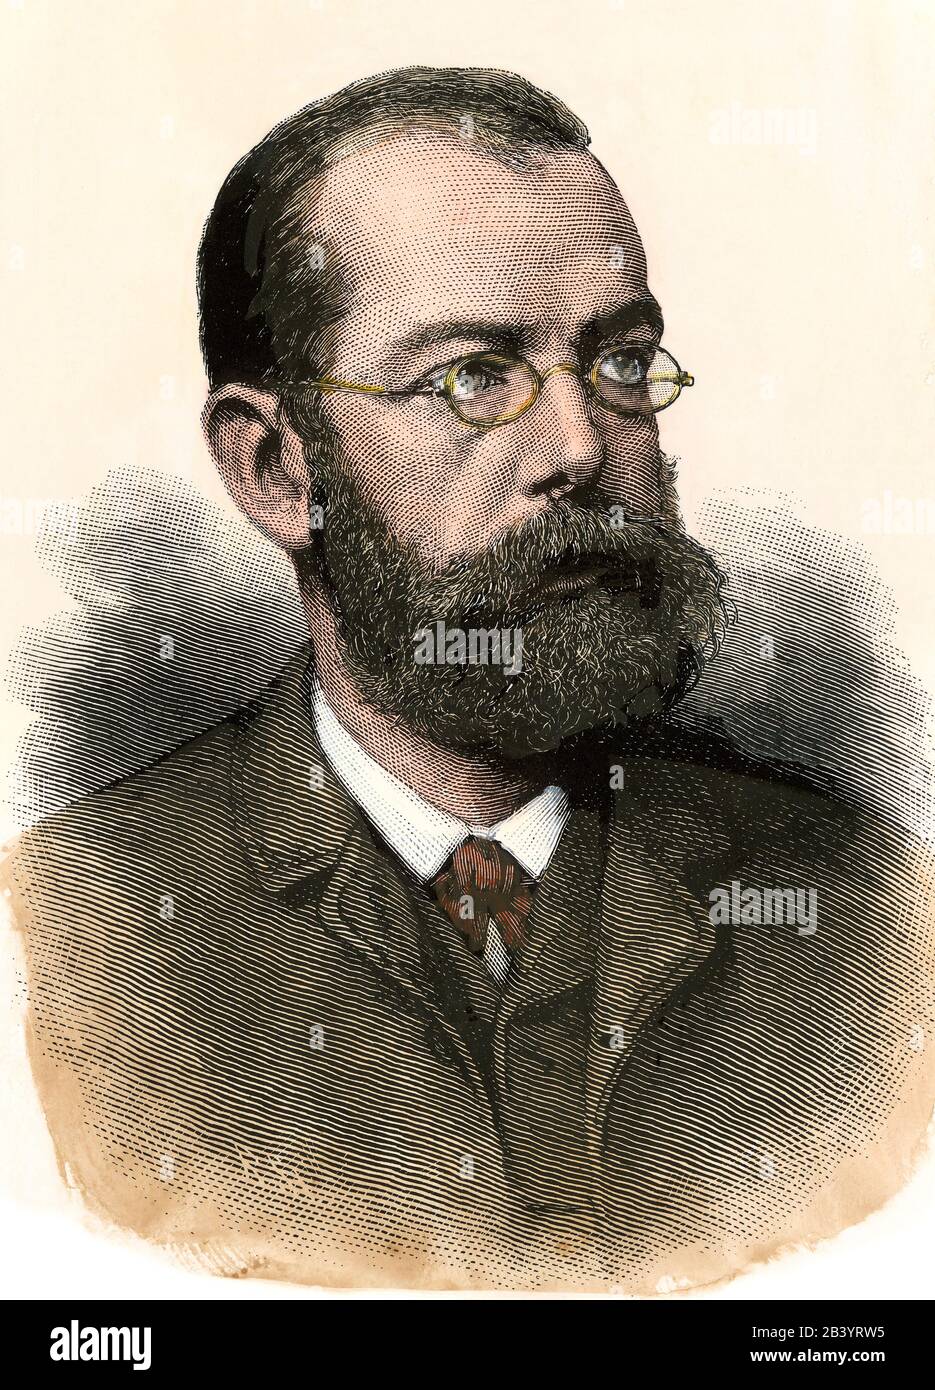 Bacteriólogo Robert Koch en la década de 1880. Madera talada a mano Foto de stock